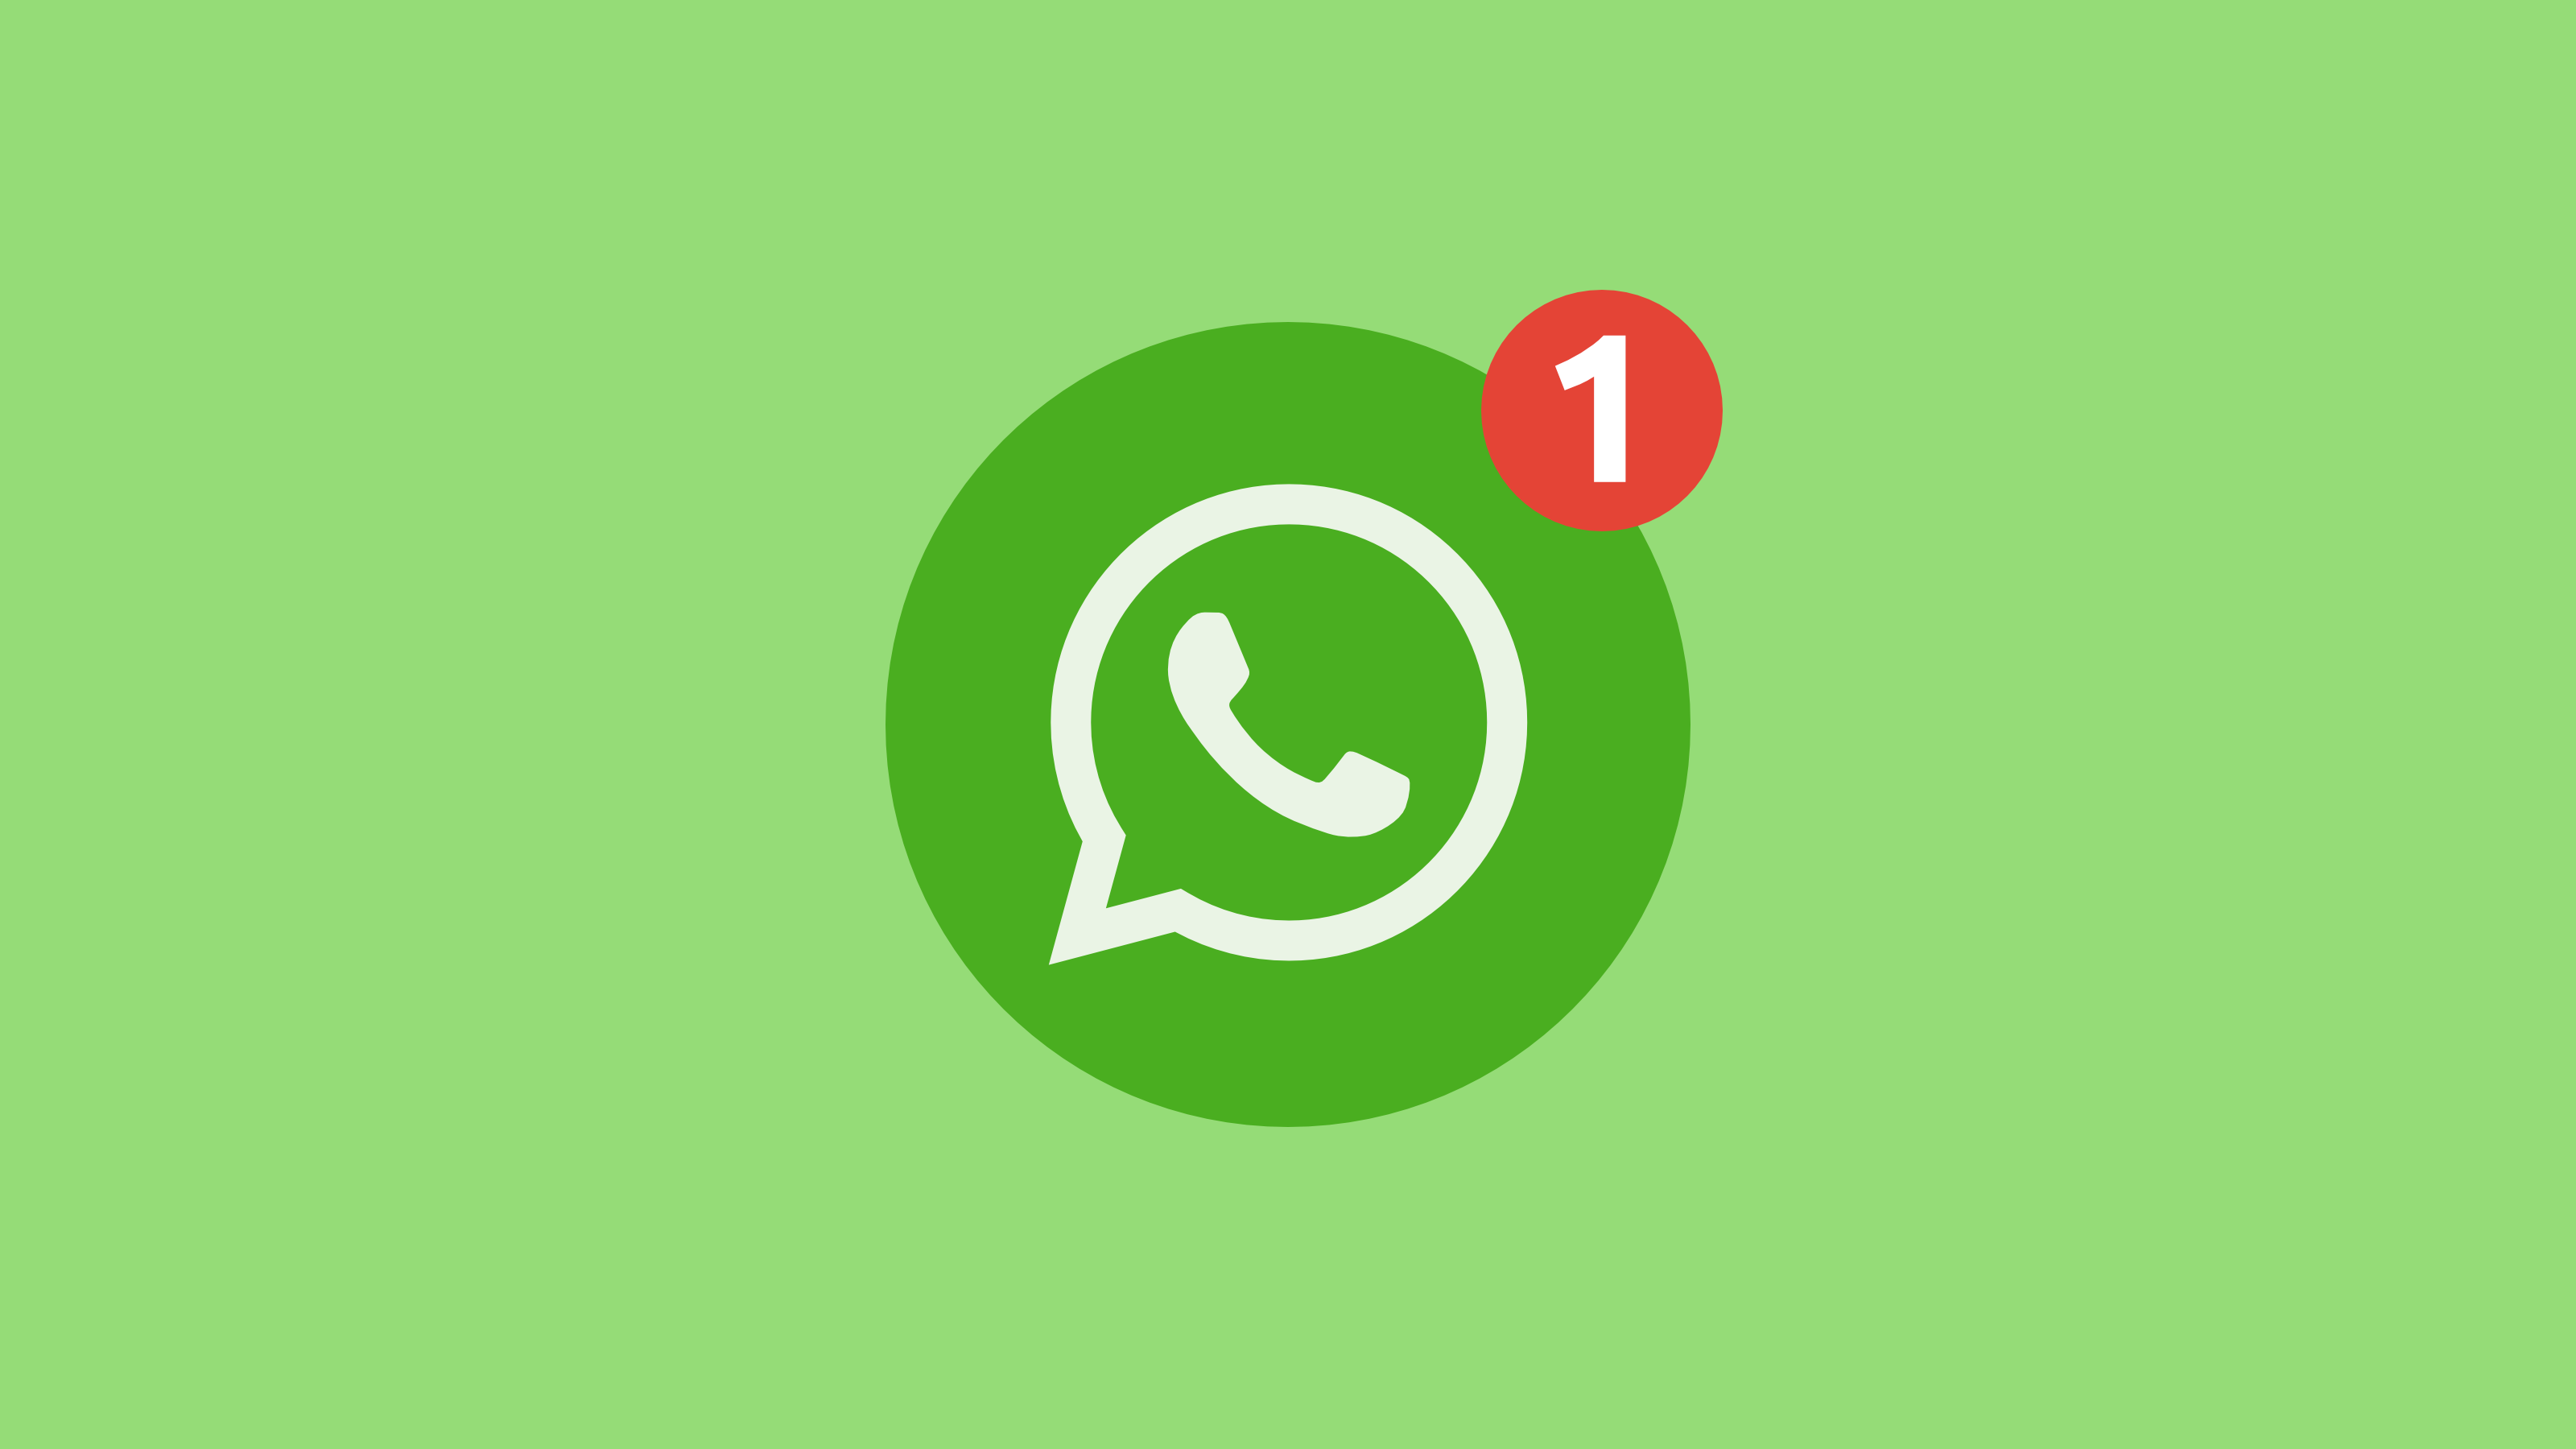 Sprach- und Textstatus werden bald in WhatsApp erscheinen